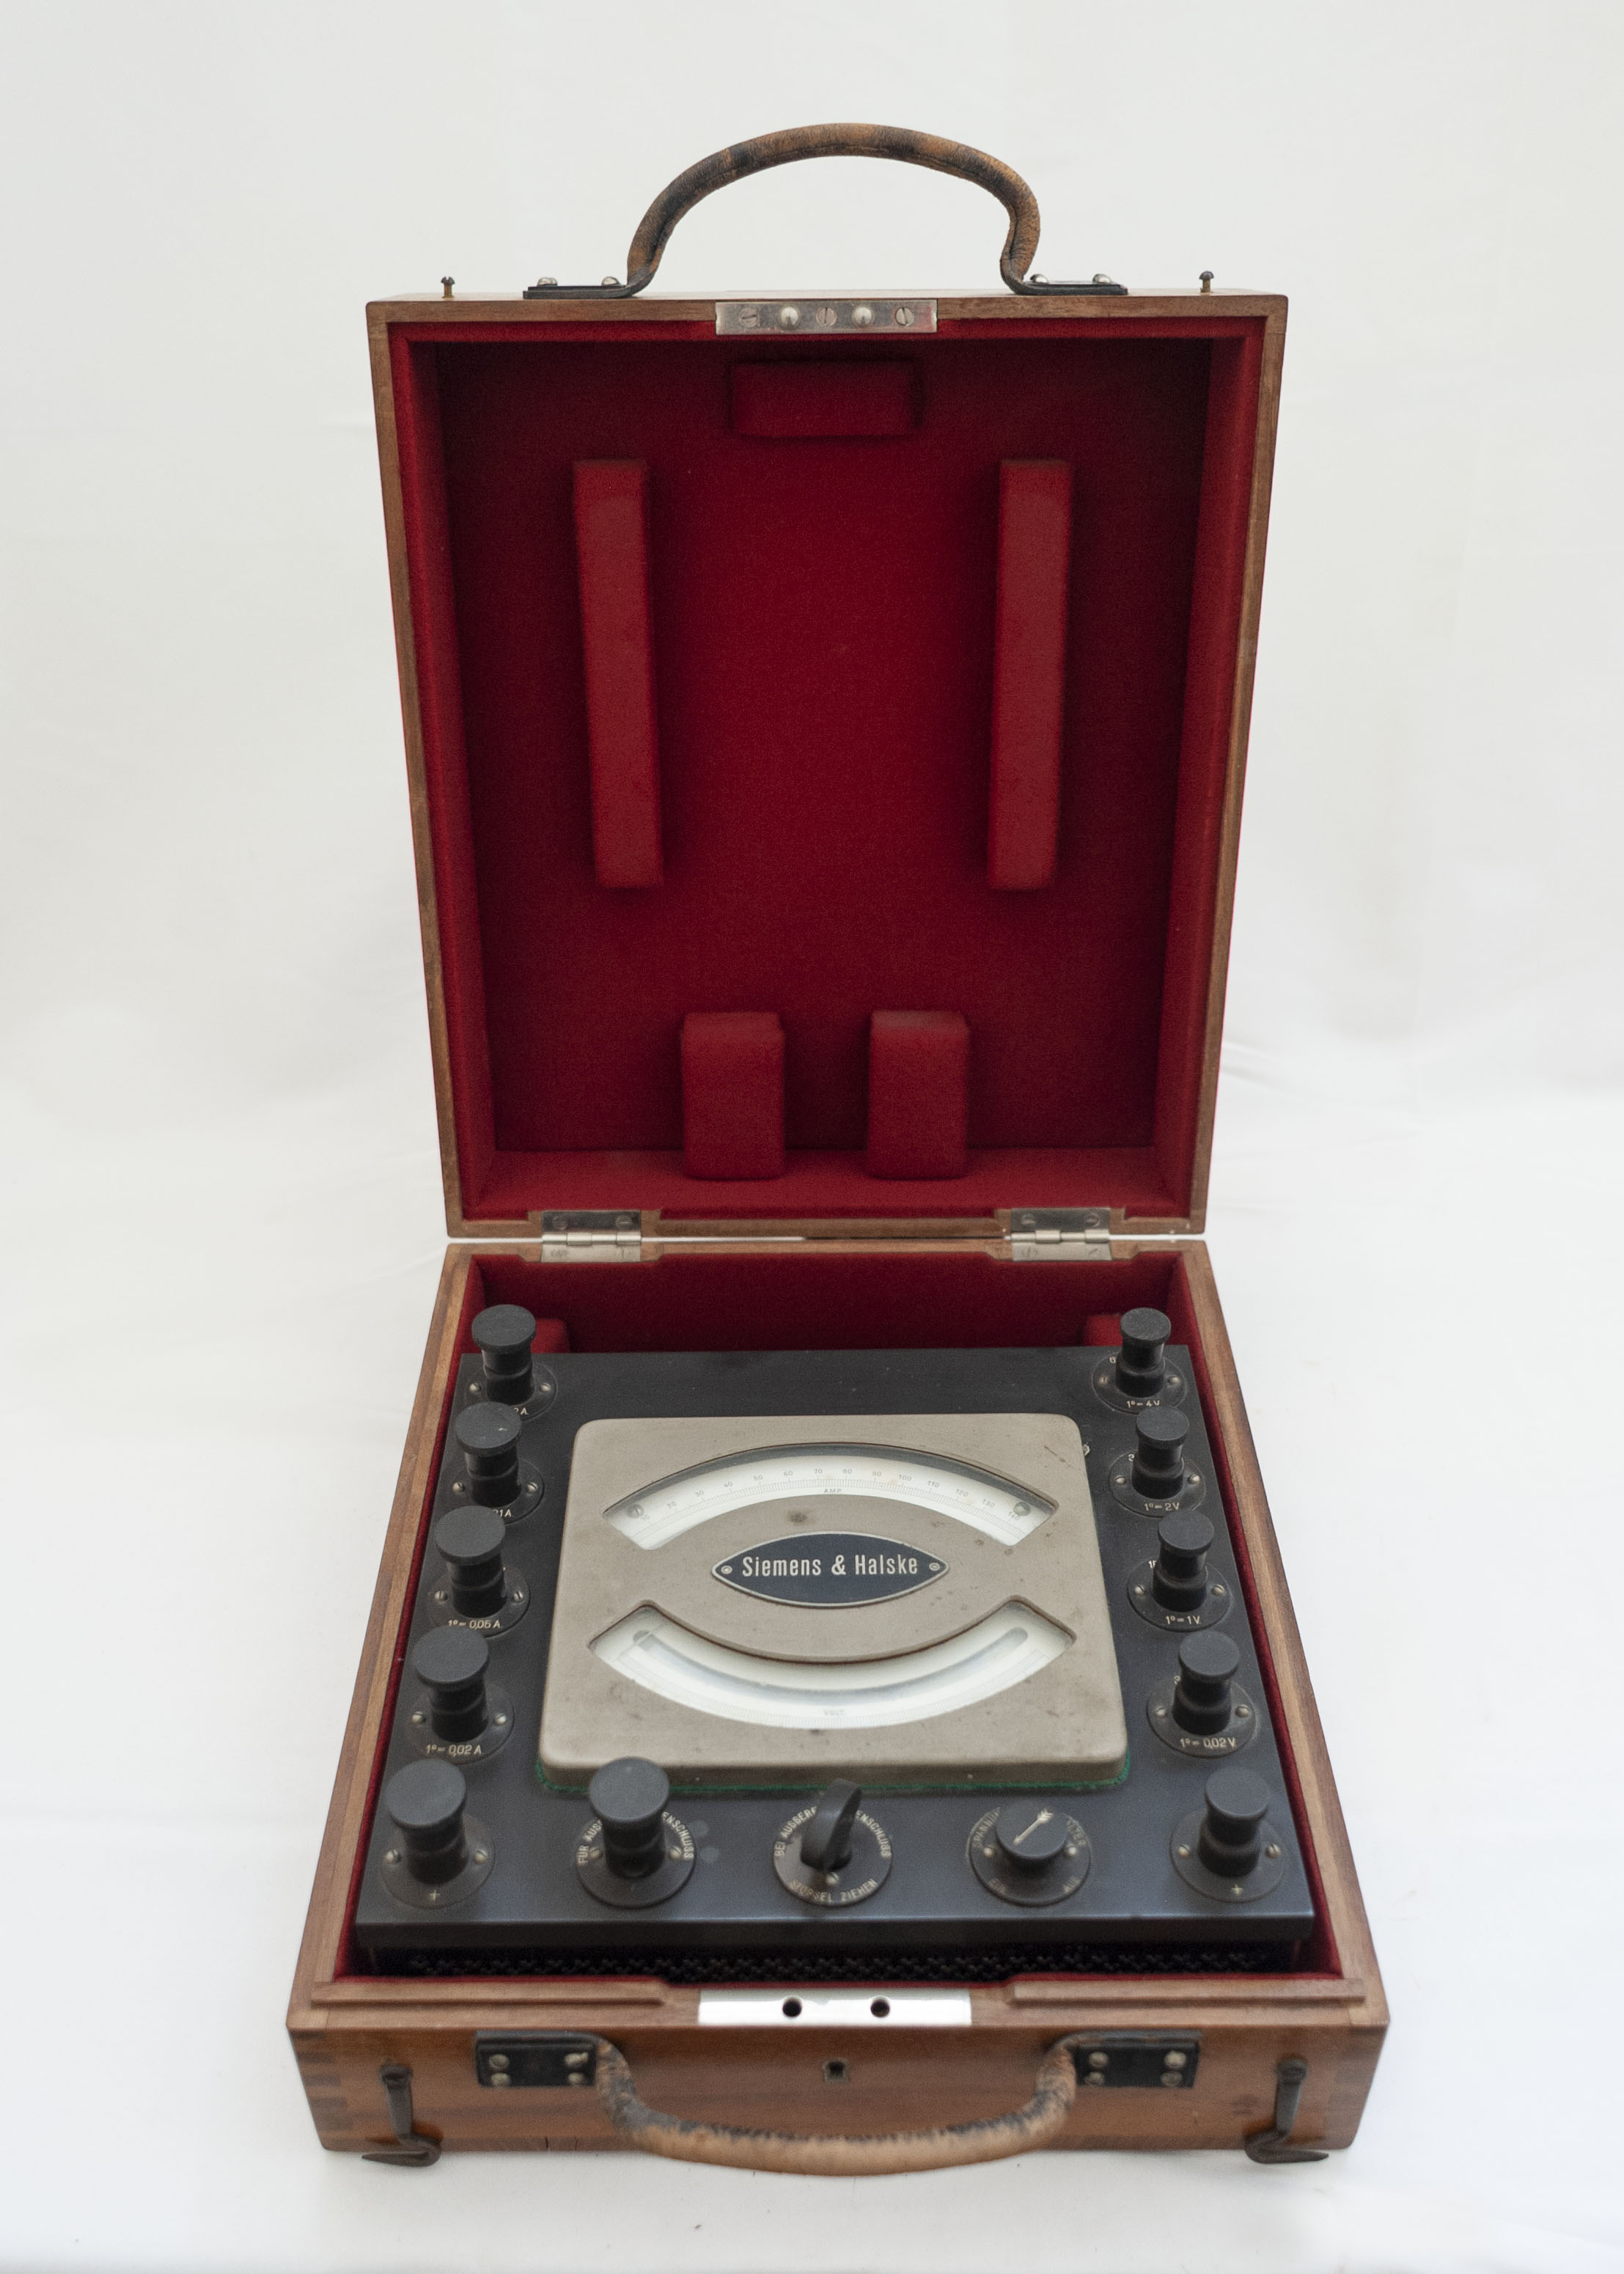 voltmetro - amperometro di precisione, Siemens & Halske di Siemens & Halske (inizio XX)